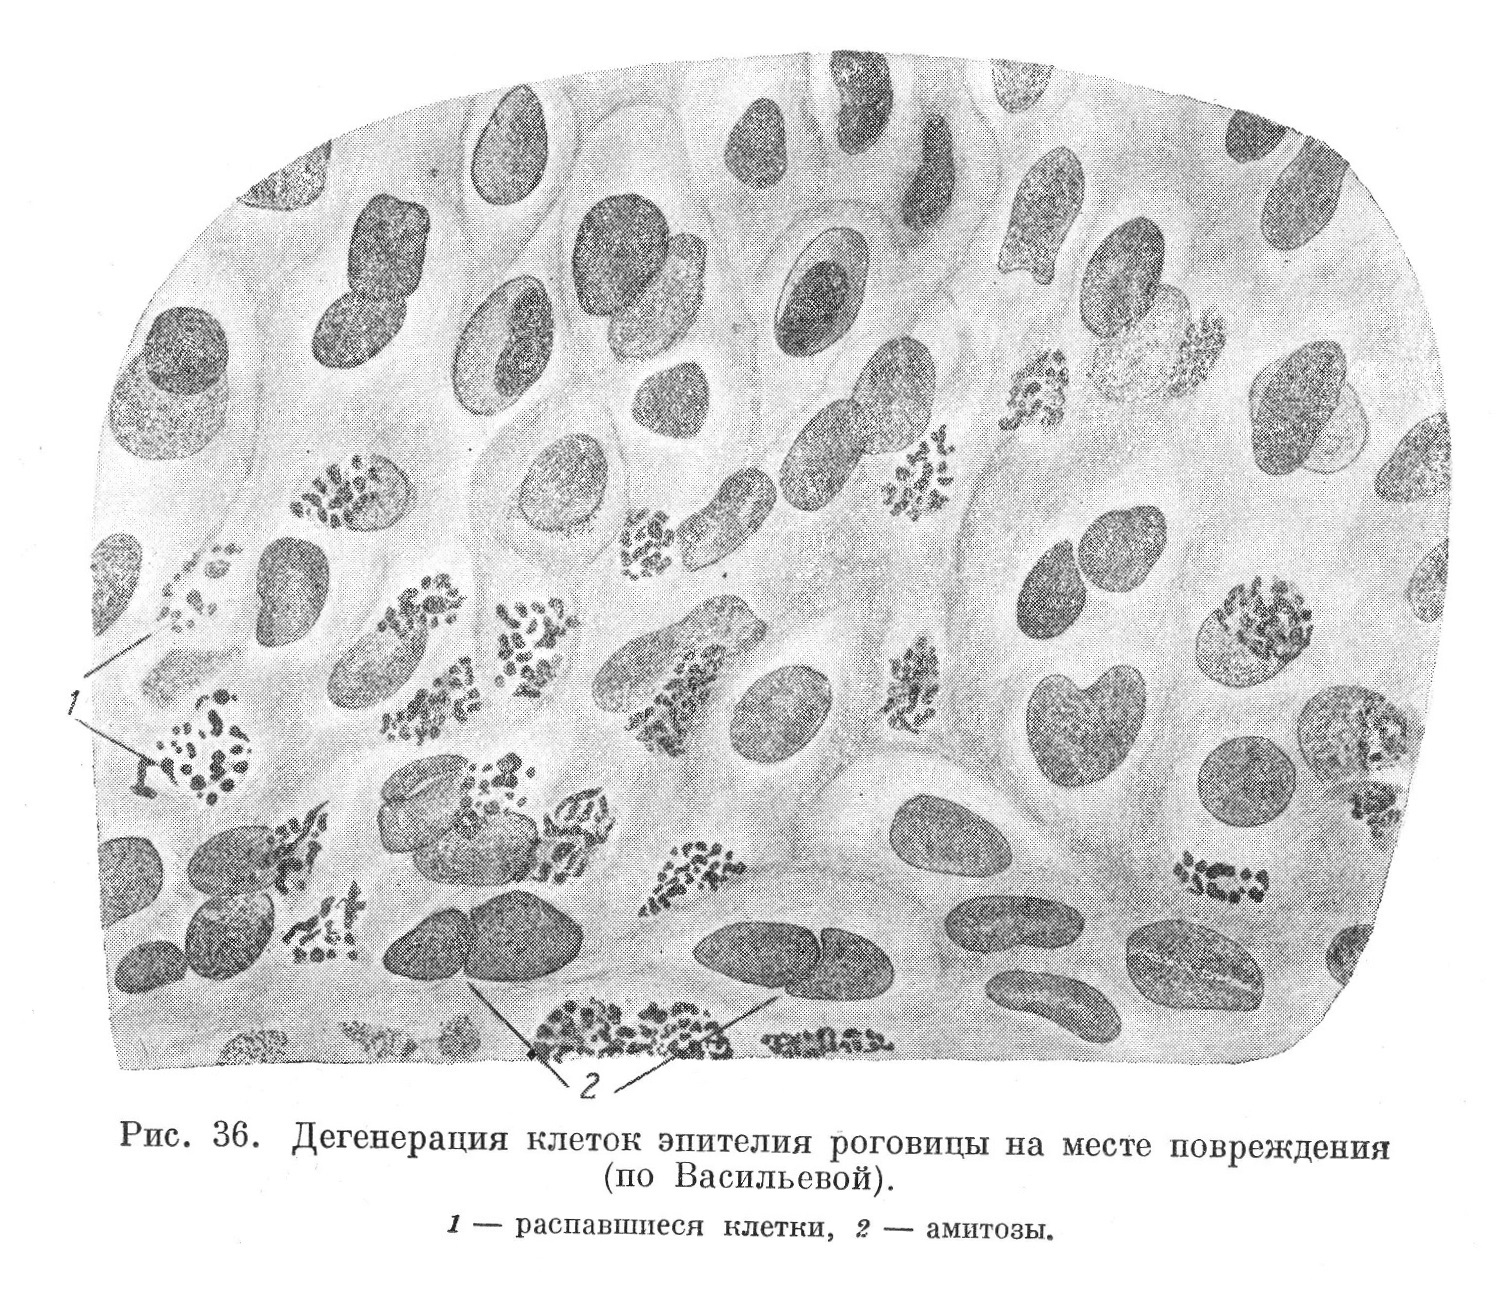 Дегенерация клеток эпителия роговицы на месте повреждения (по Васильевой).